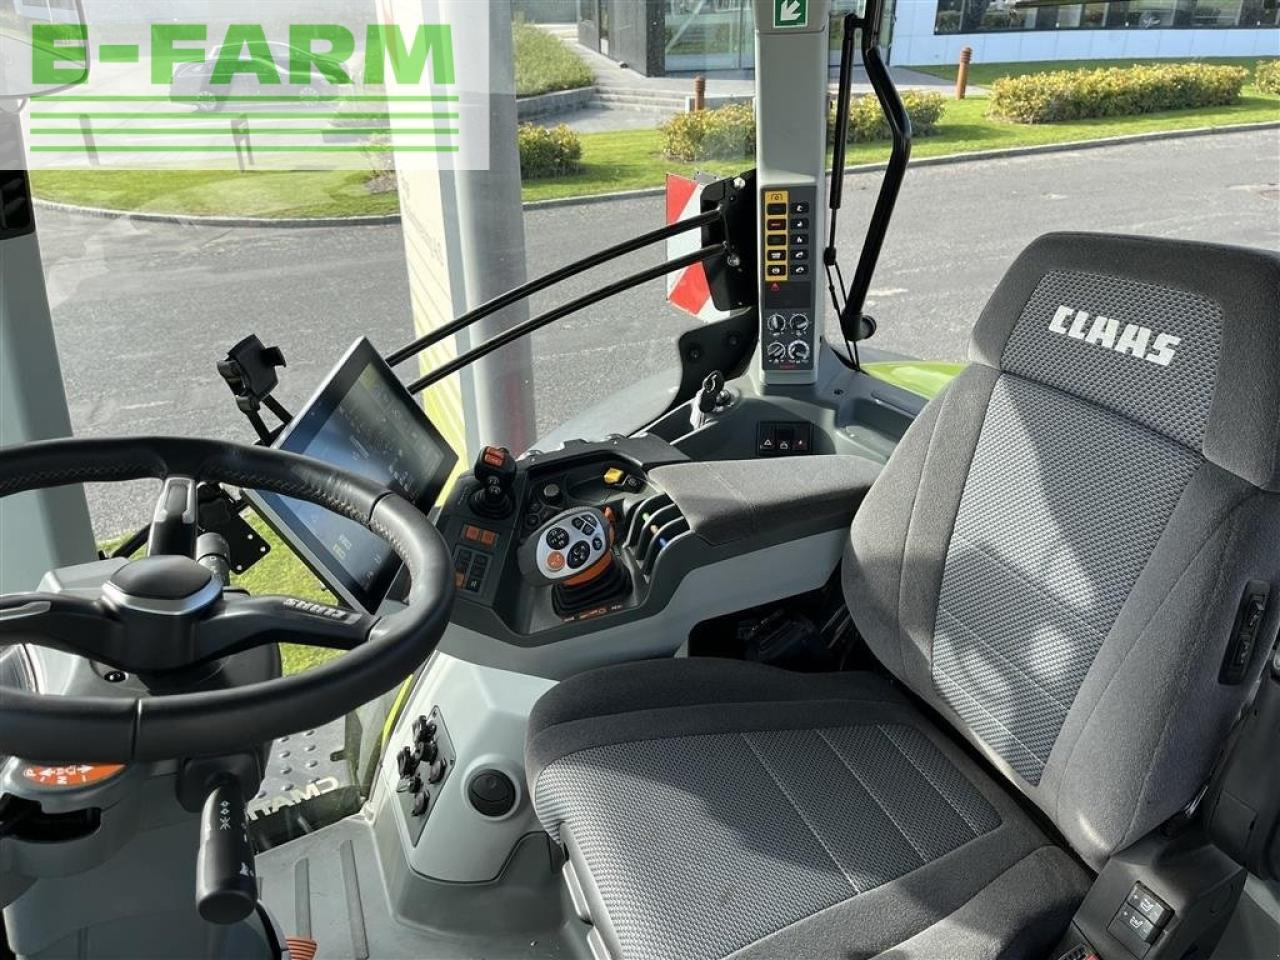 Farm tractor CLAAS axion 930 front pto